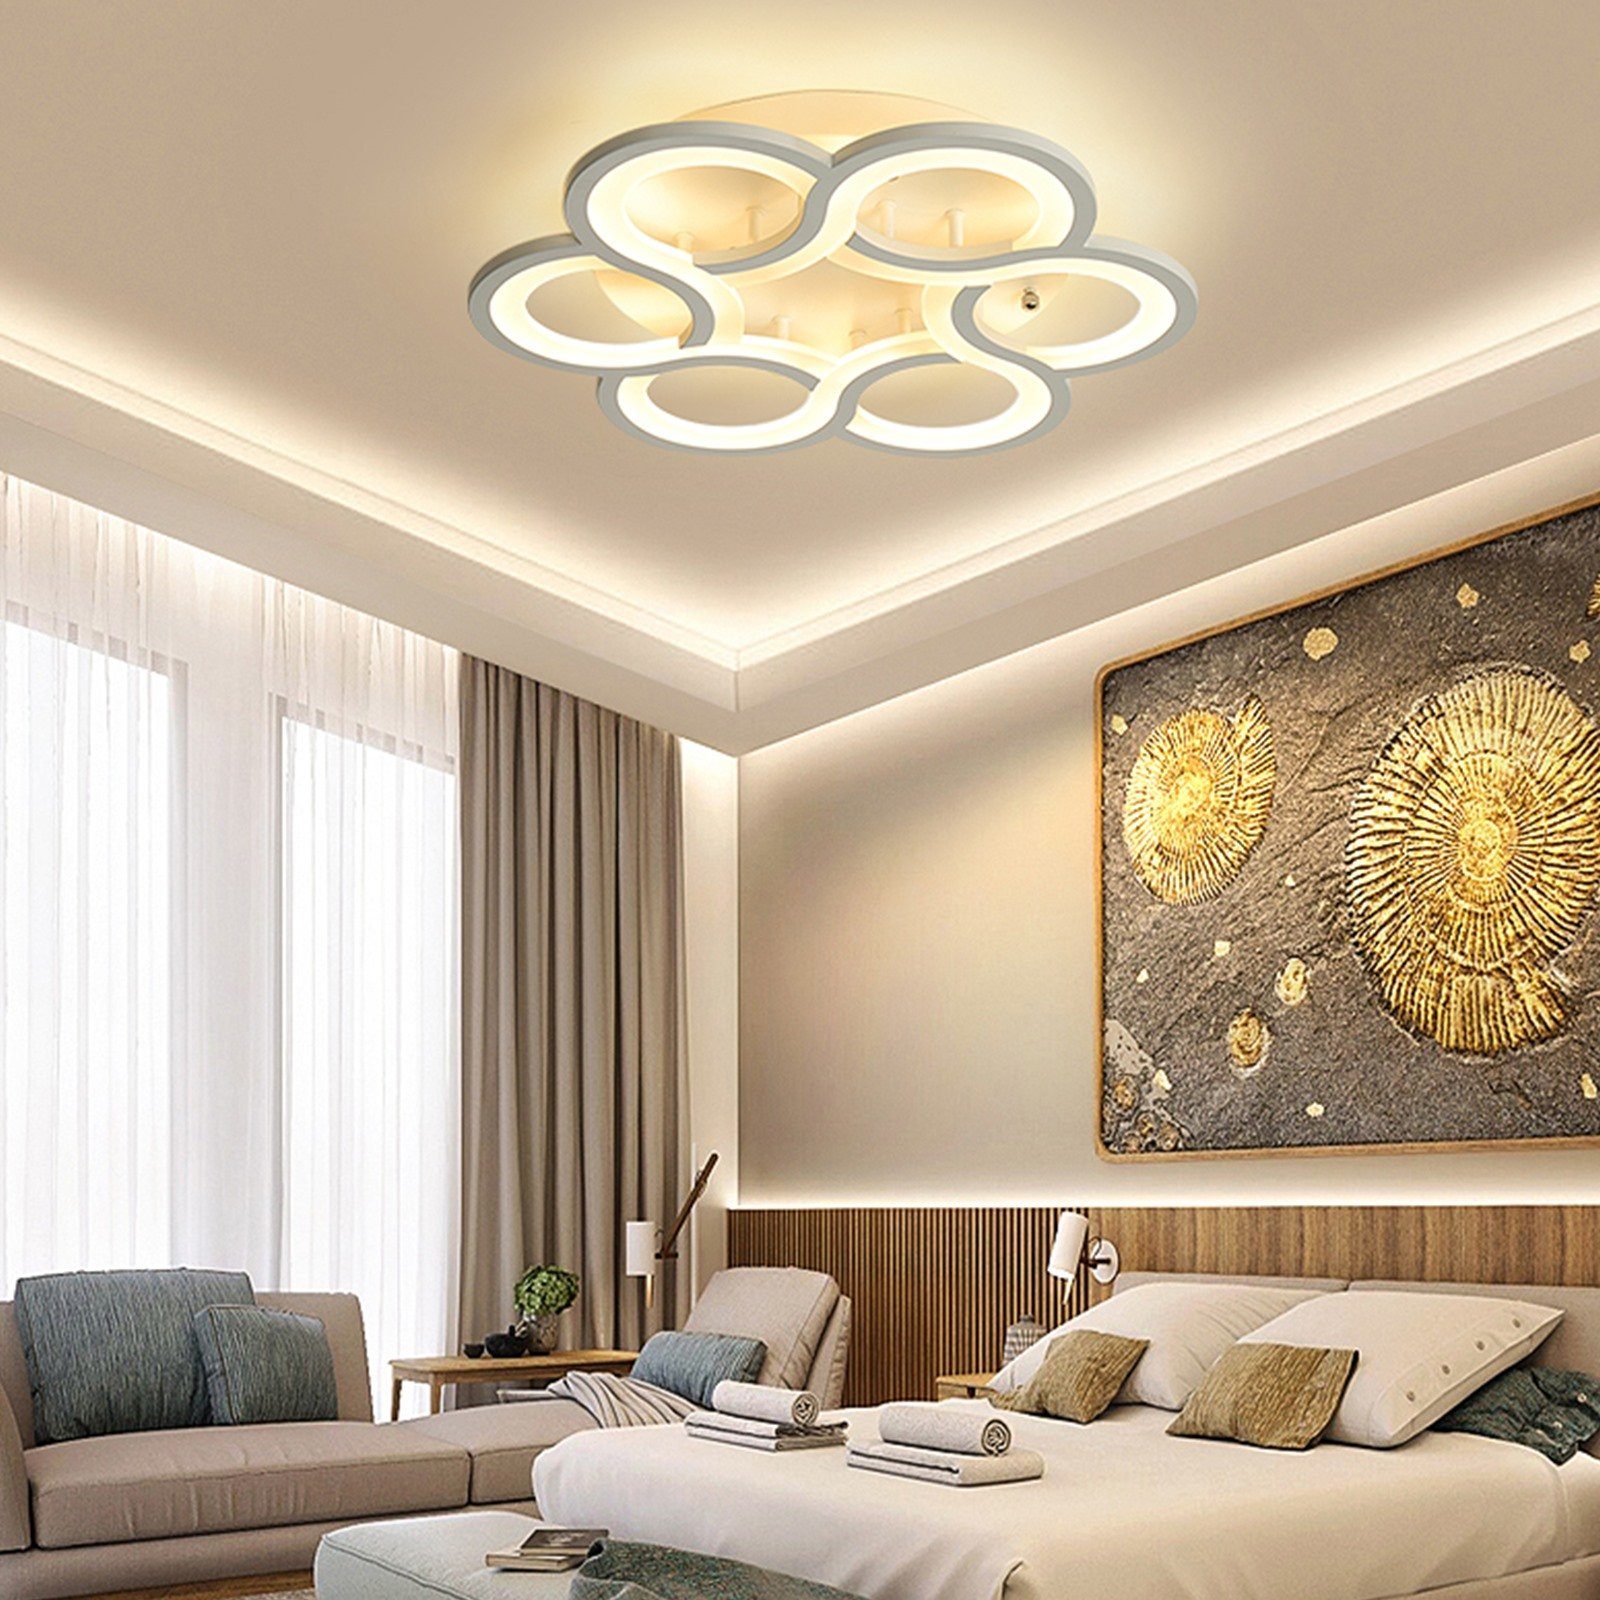 Daskoo Deckenleuchten 43W Dimmbar Deckenlampe Modern Weiß Wohnzimmerlampe Fernbedienung, LED fest integriert, Neutralweiß,Warmweiß,Kaltweiß, LED Deckenleuchte stufenlos dimmbar